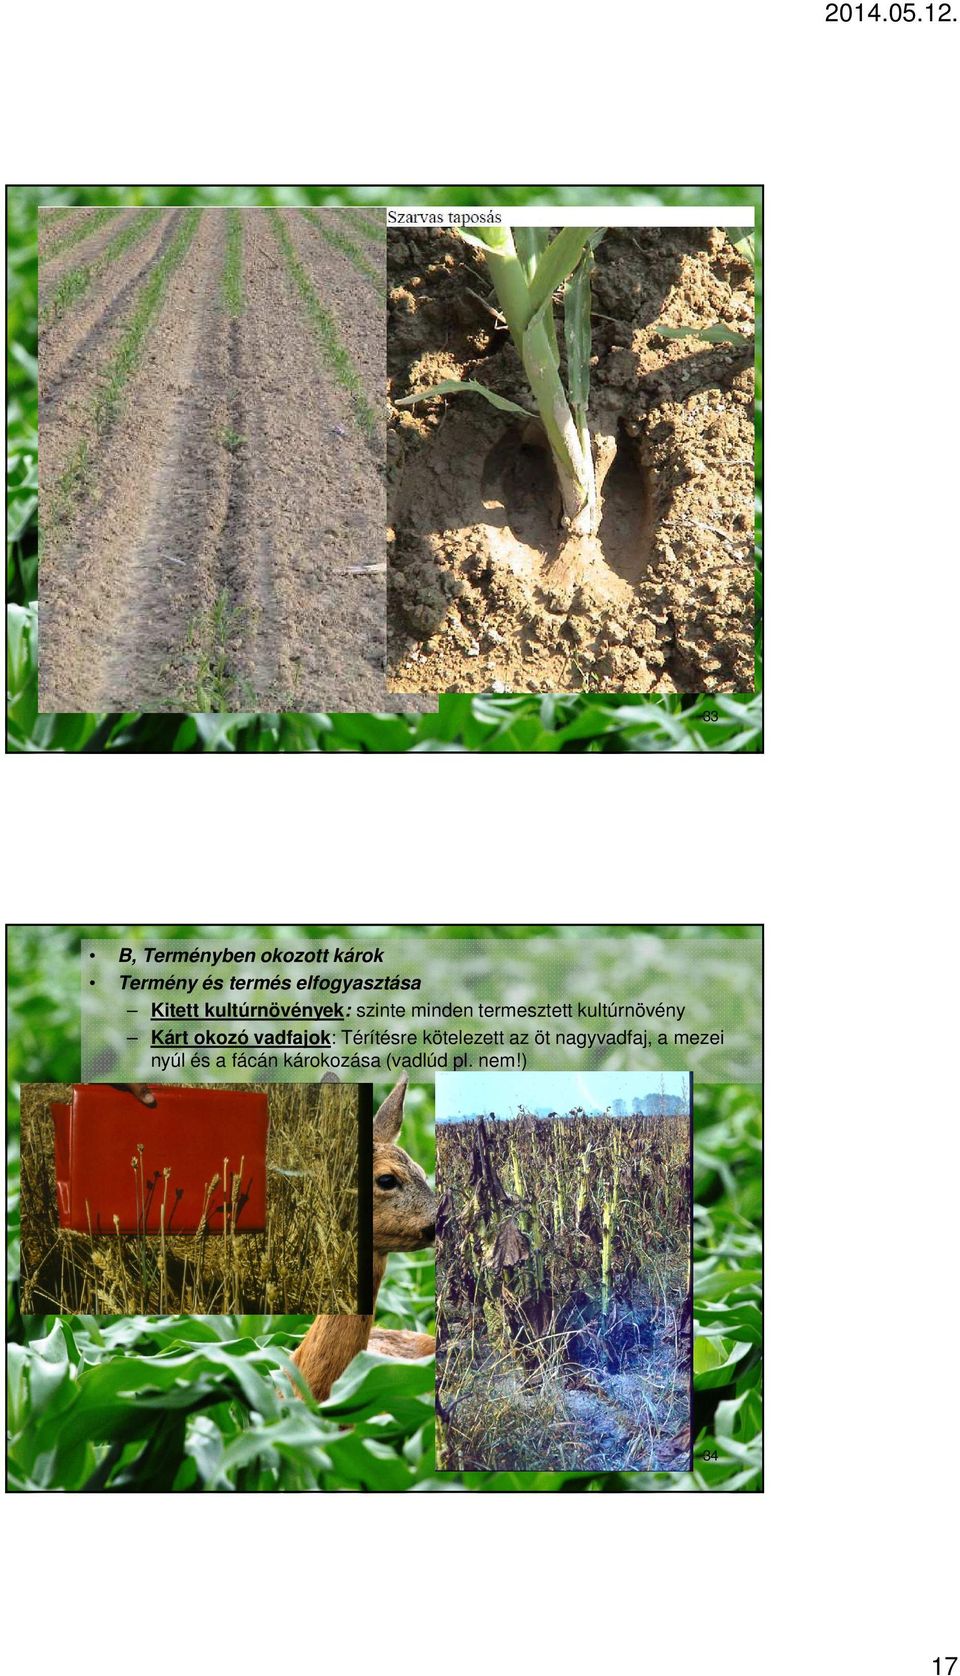 termesztett kultúrnövény Kárt okozó vadfajok: Térítésre